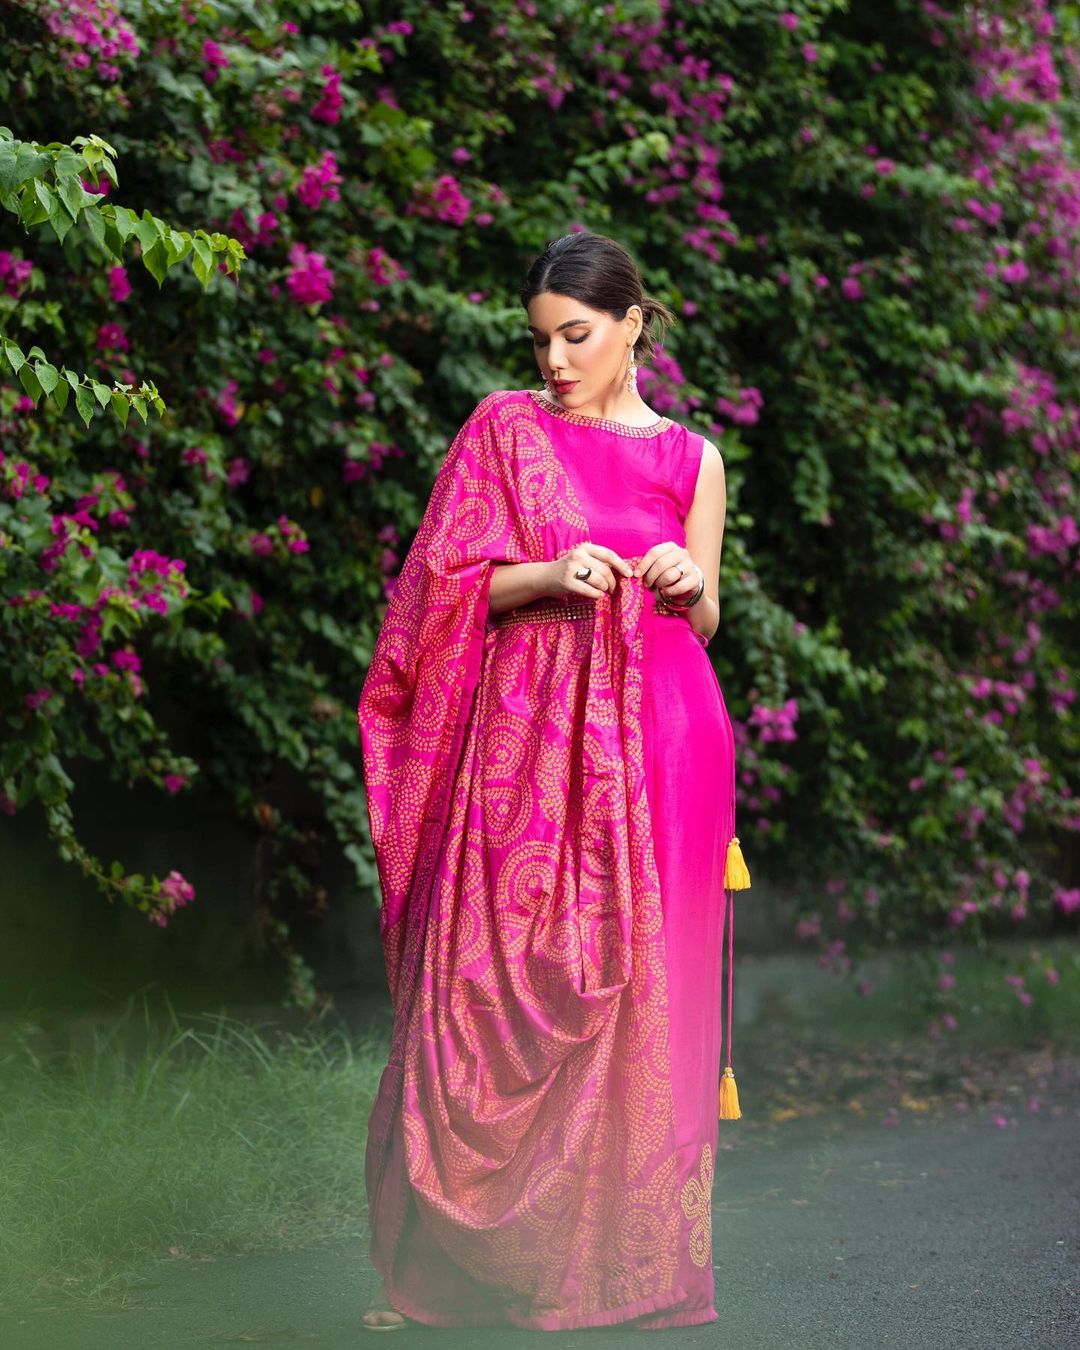 Roshni bhatia fashion and beauty